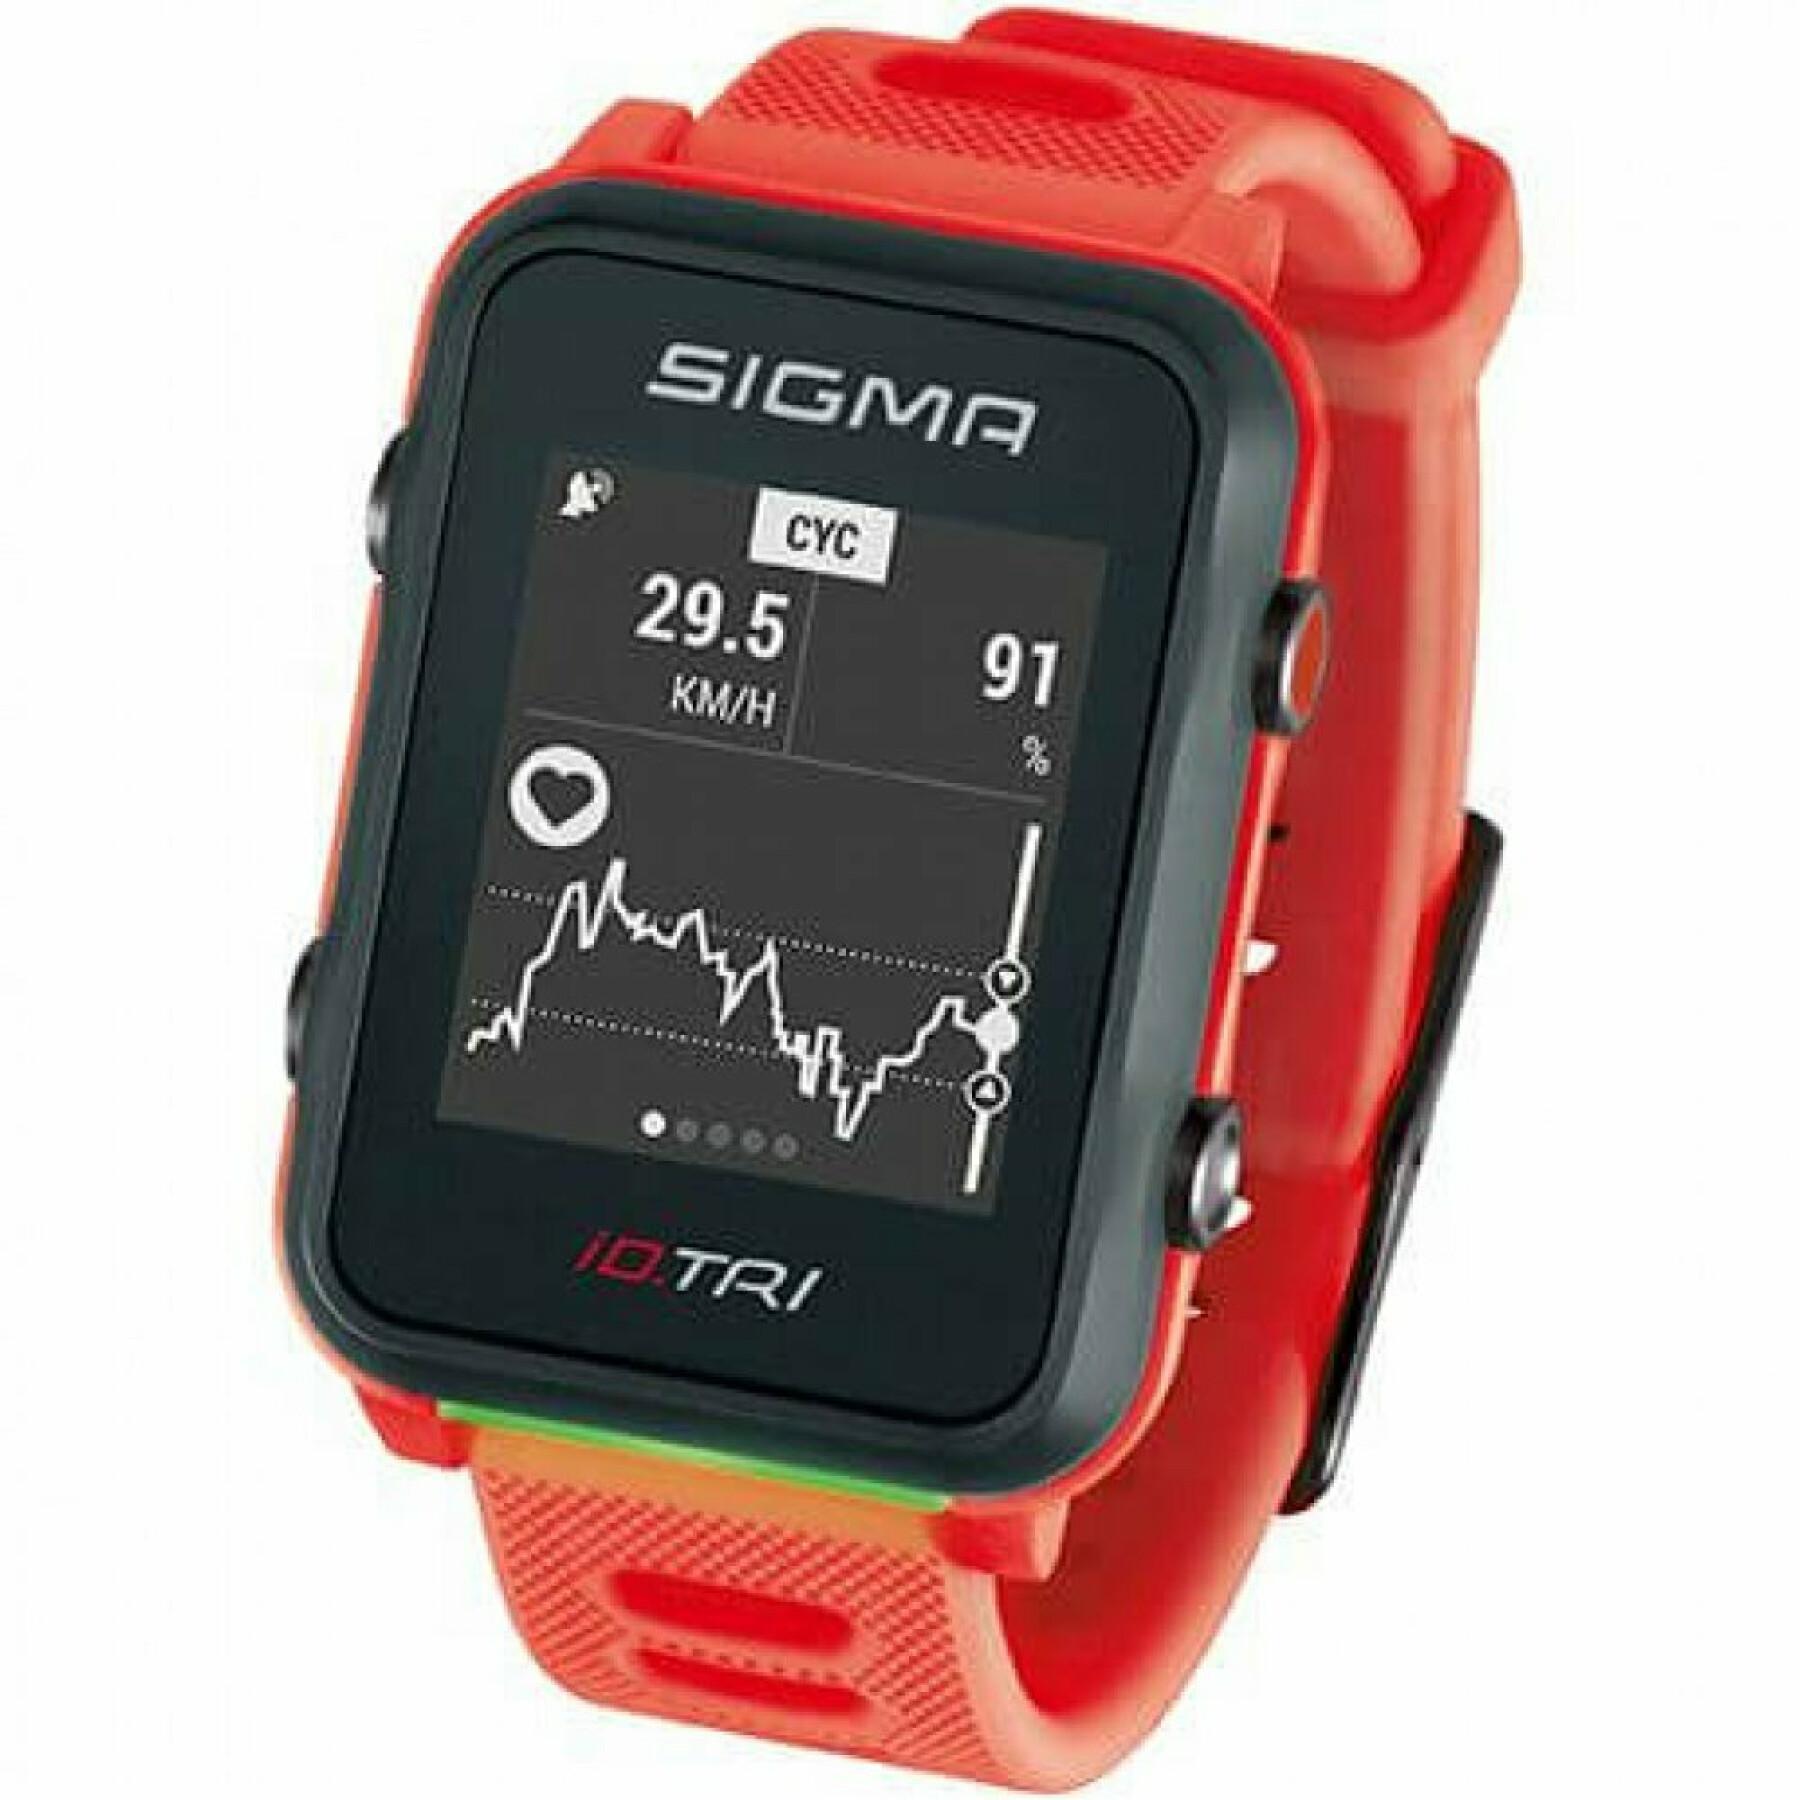 Monitor de ritmo cardíaco configurado Sigma iD.TRI